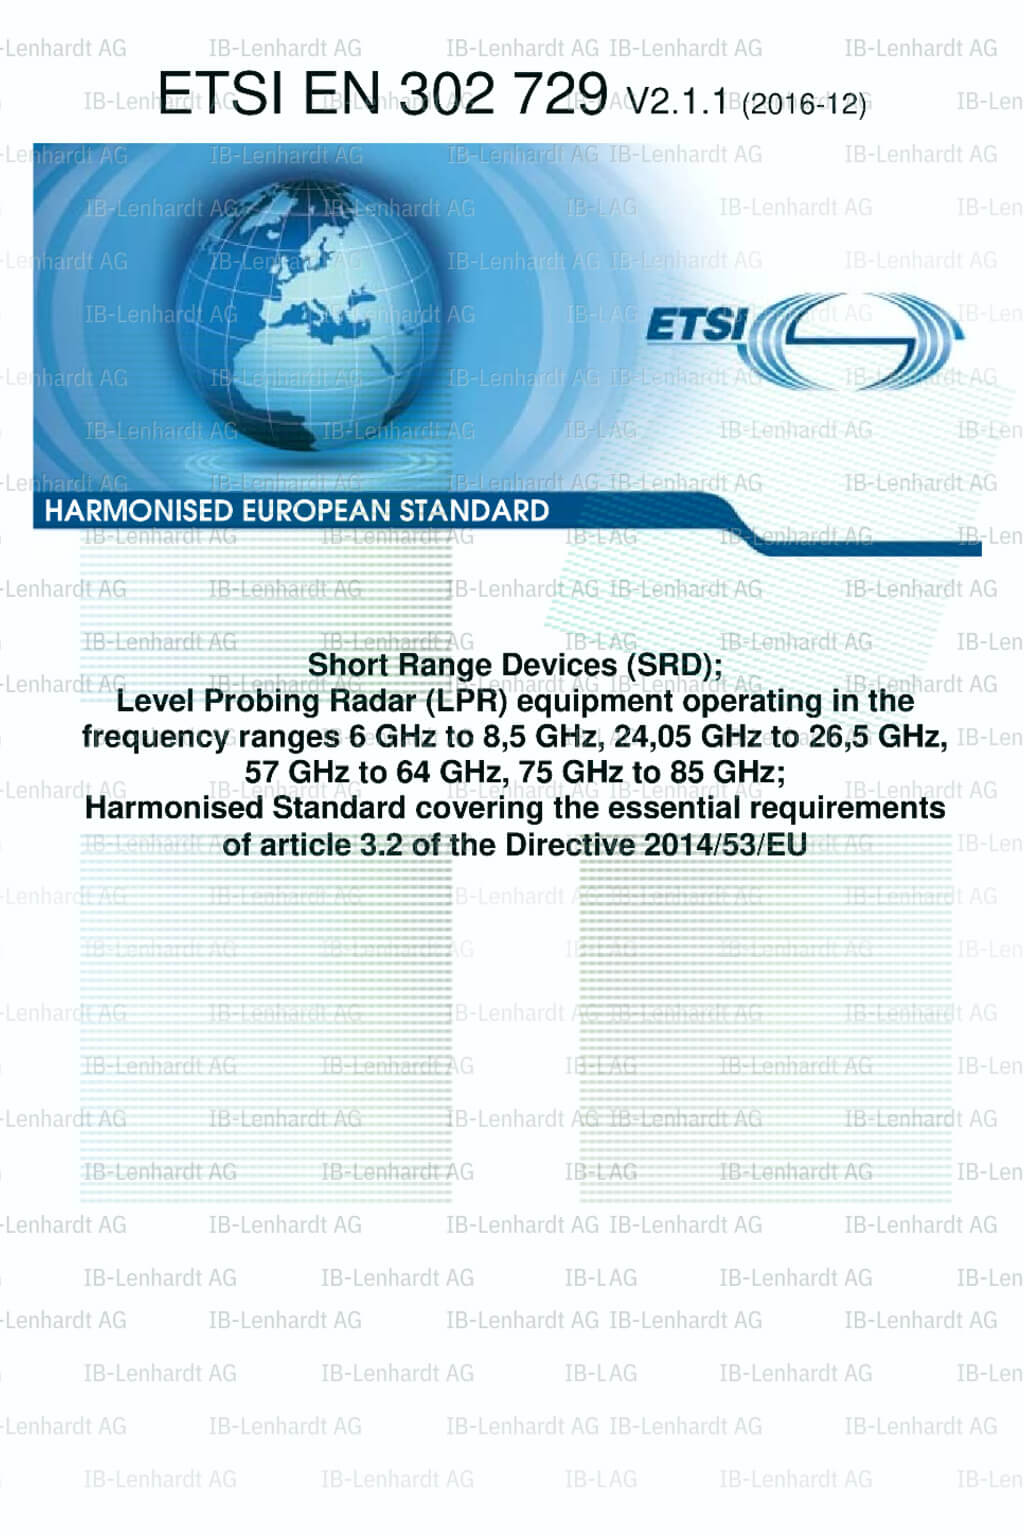 ETSI EN 302 729 V2.1.1